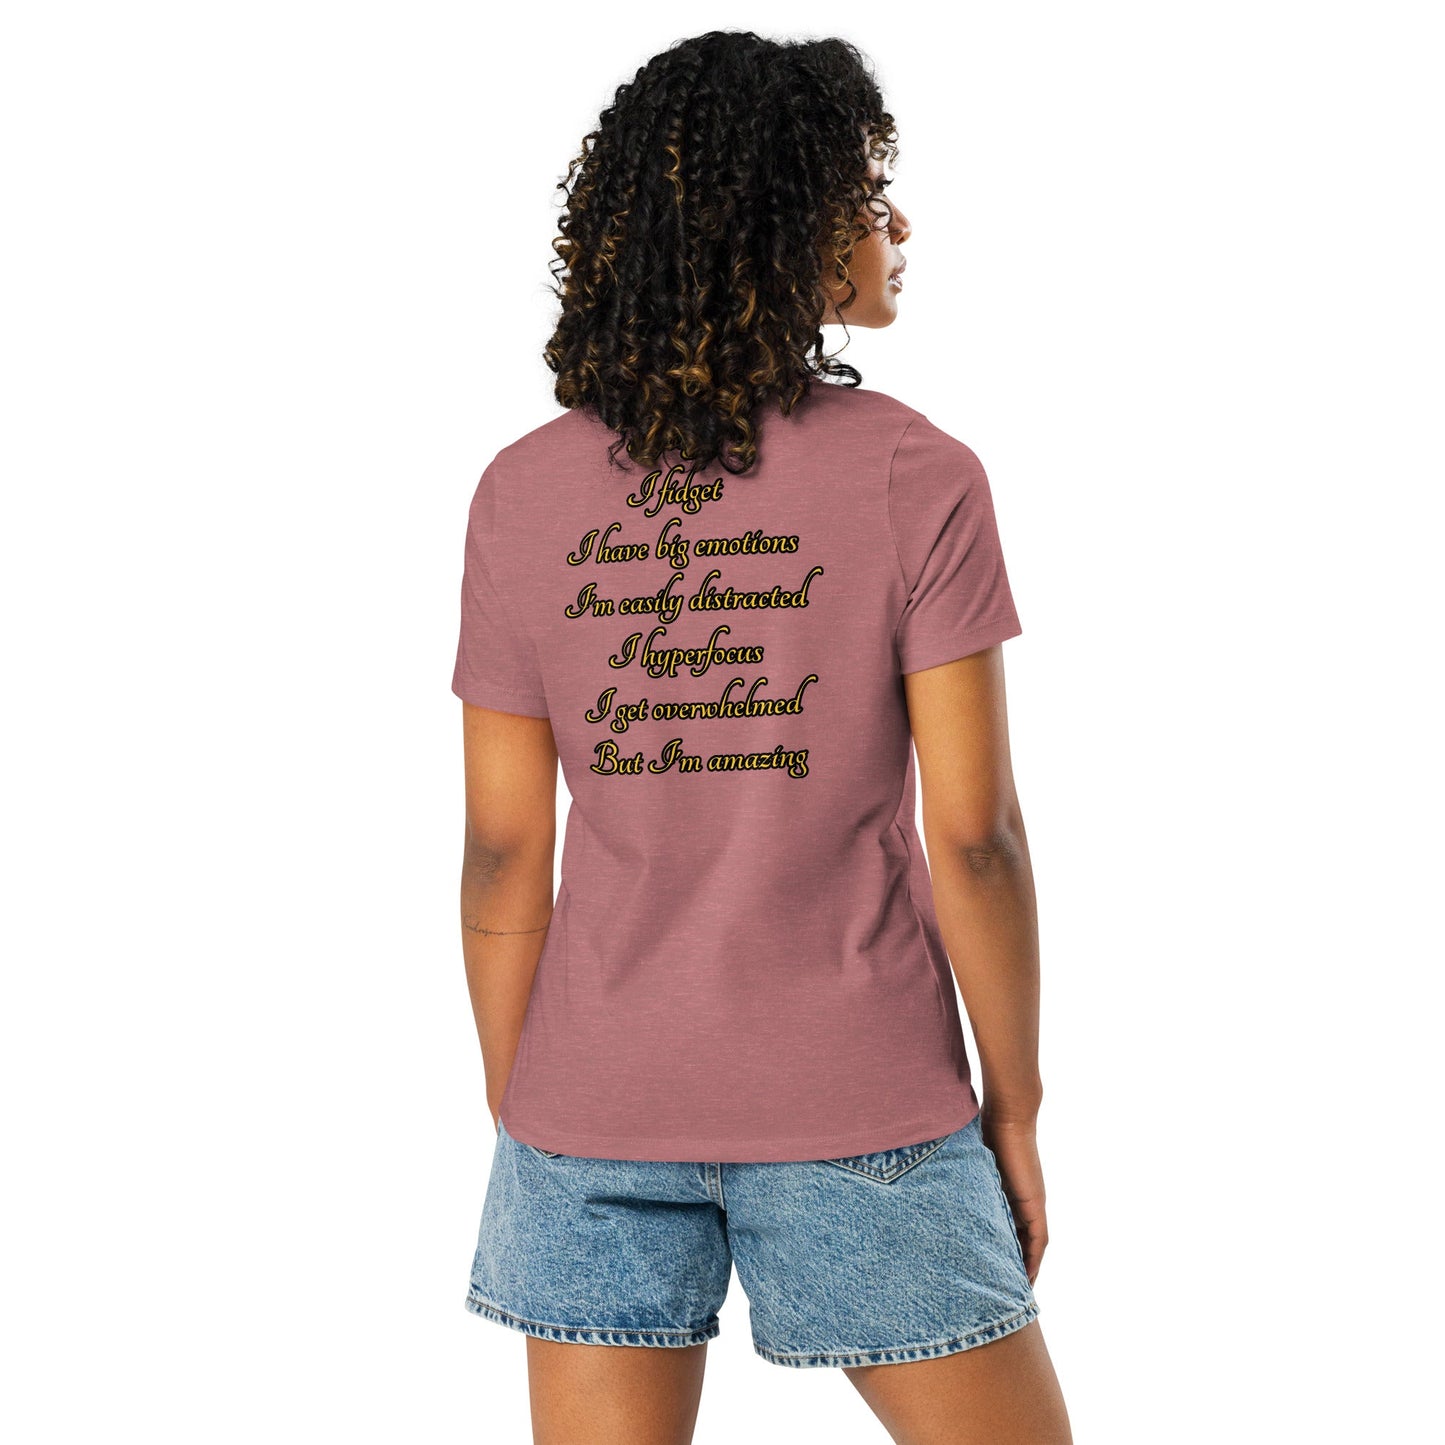 ADHD Warrior Women's Relaxed T-Shirt - Weirdly Sensational